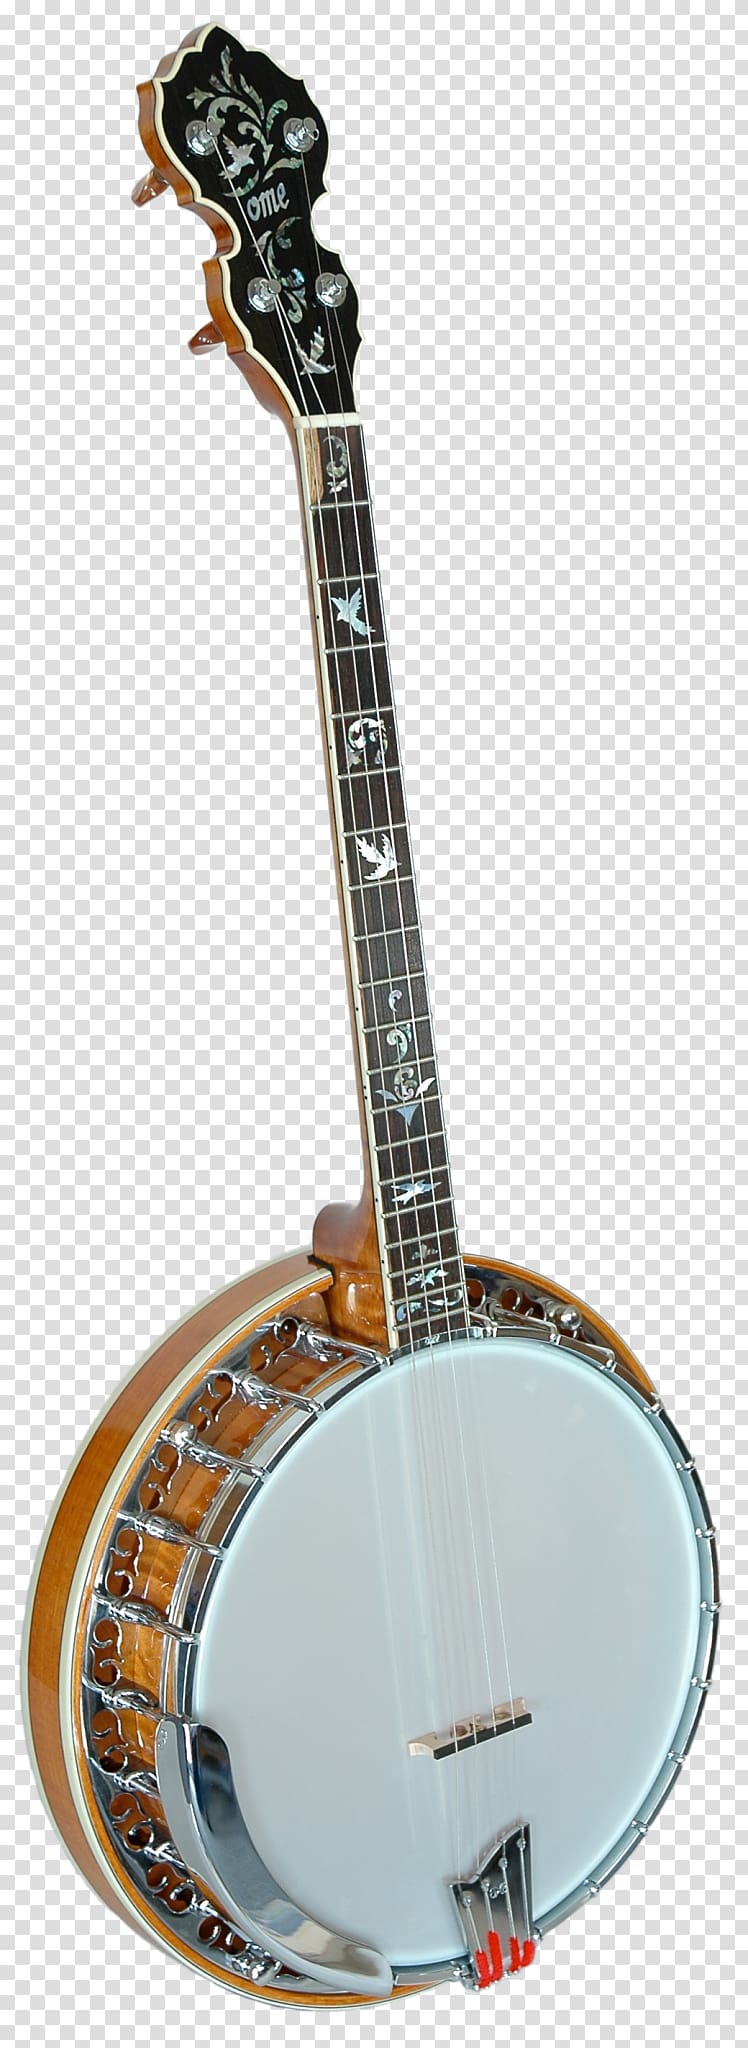 ome banjo of koa wood